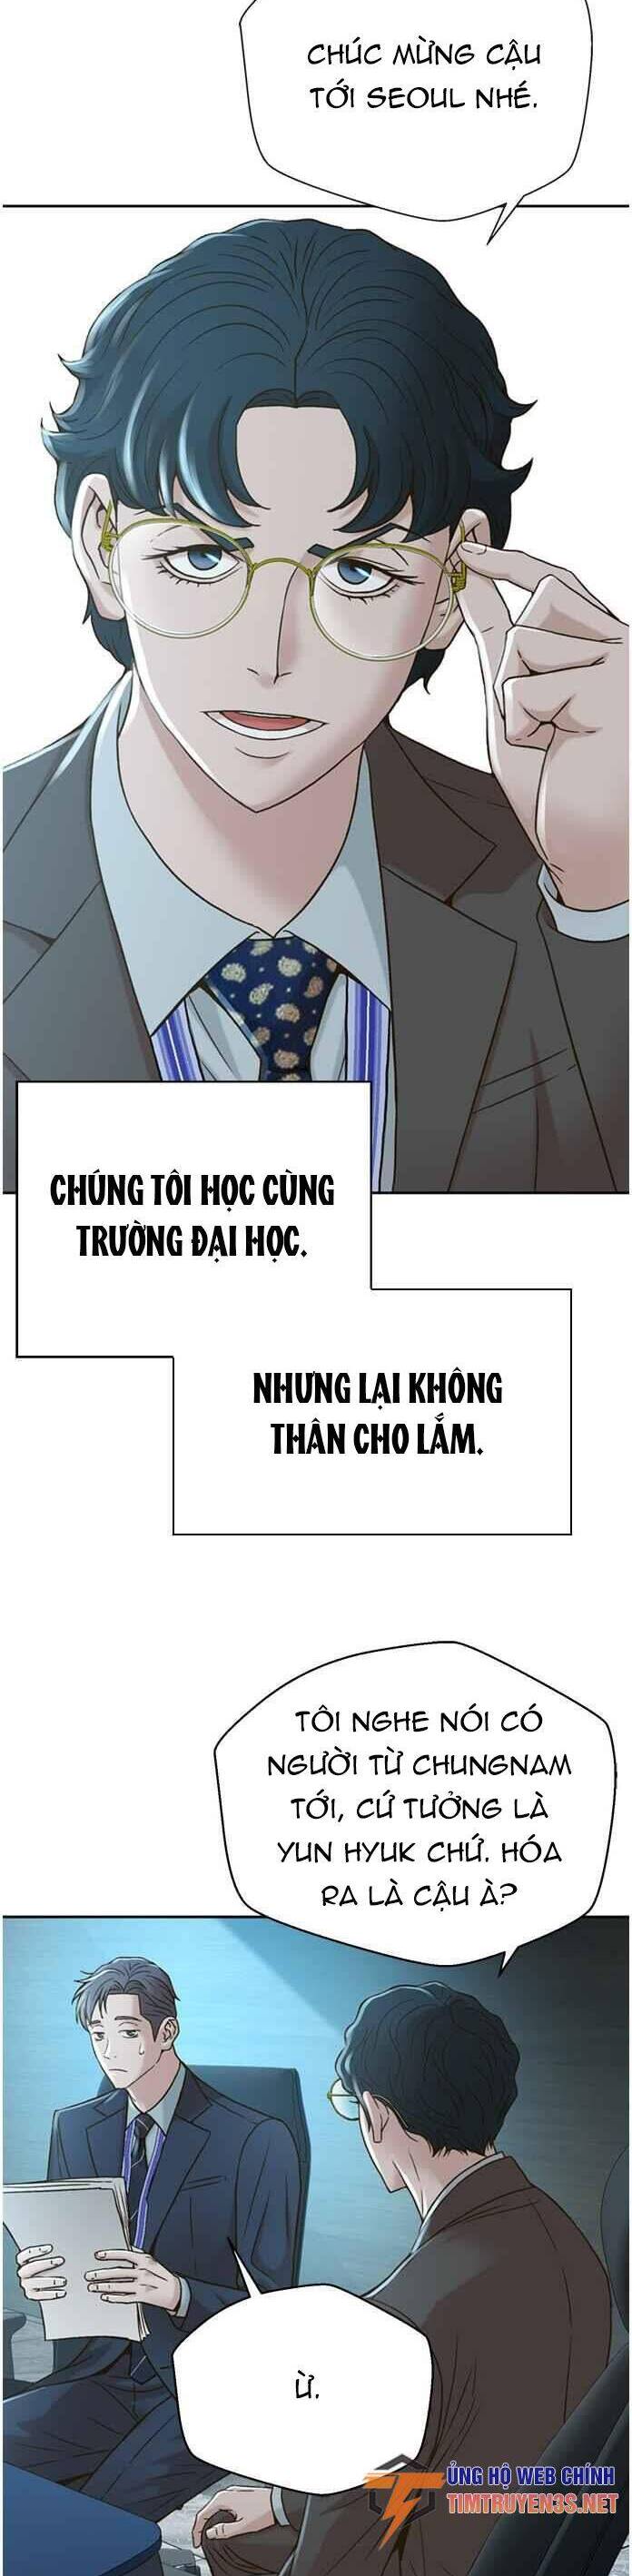 Truyện khủng - Thẩm Phán Lee Han Young